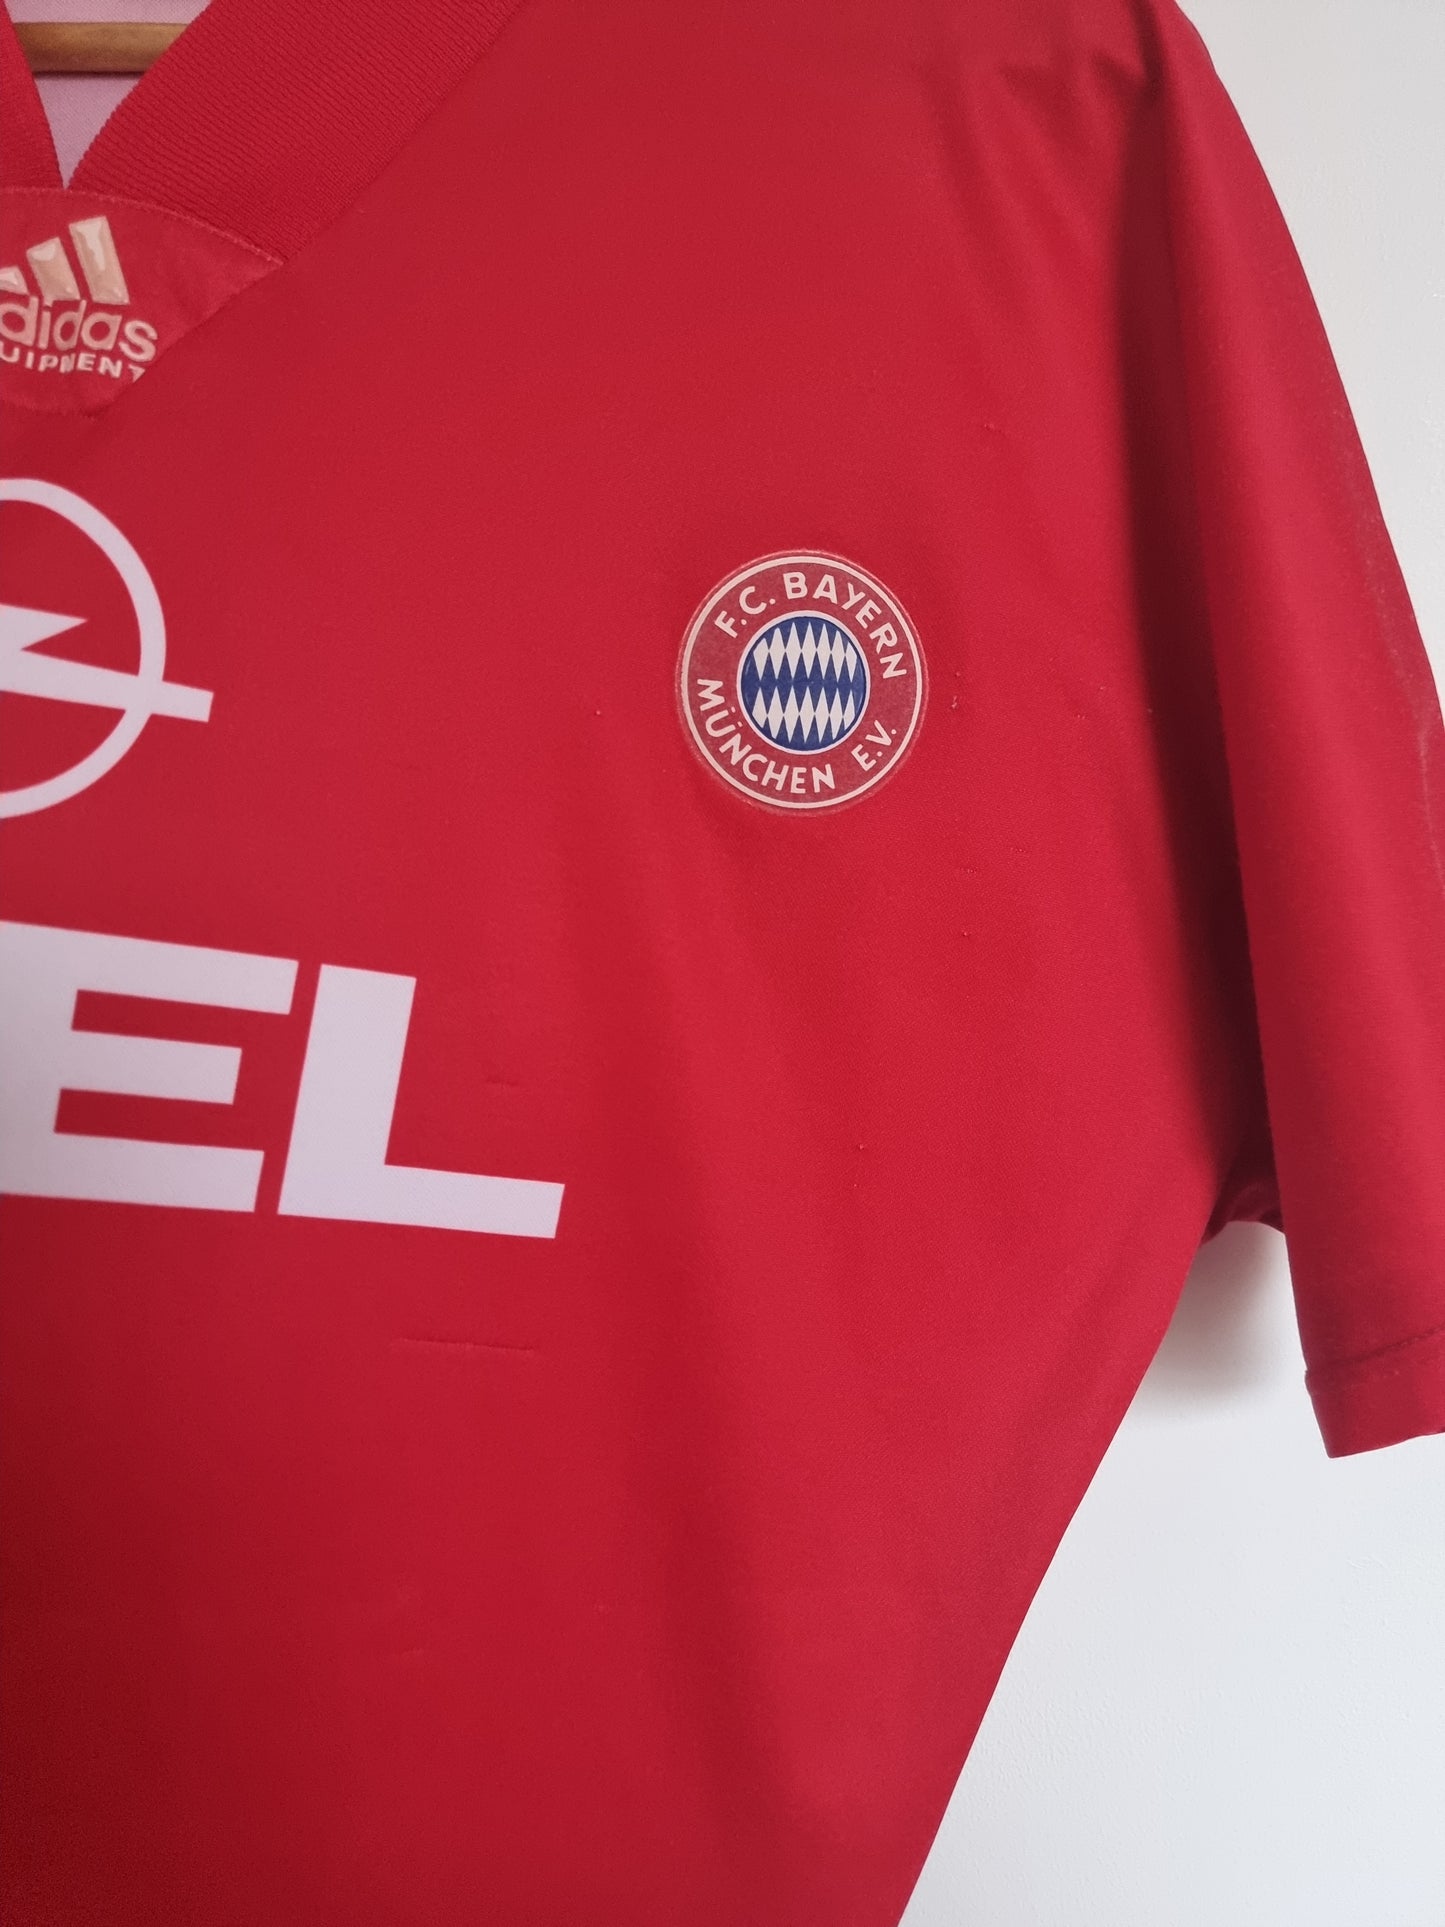 Adidas Bayern Munich 91/93 Home Shirt Large